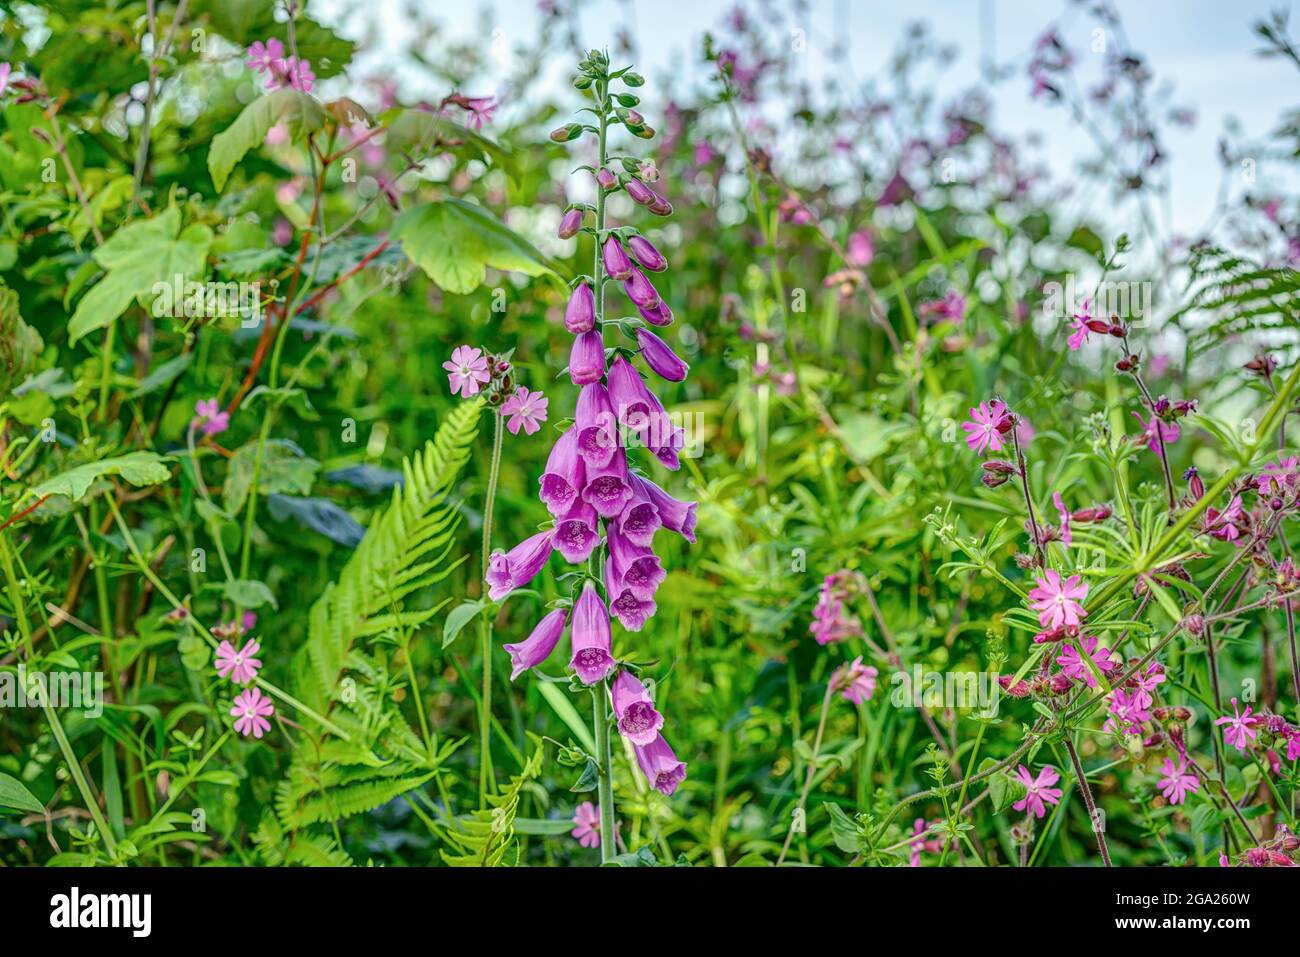 Un bel guanto di fossa viola (digitalis) che cresce selvatico in questo hedgerow inglese dal lato di un vicolo di campagna circondato da altri fiori come il campiano. Foto Stock